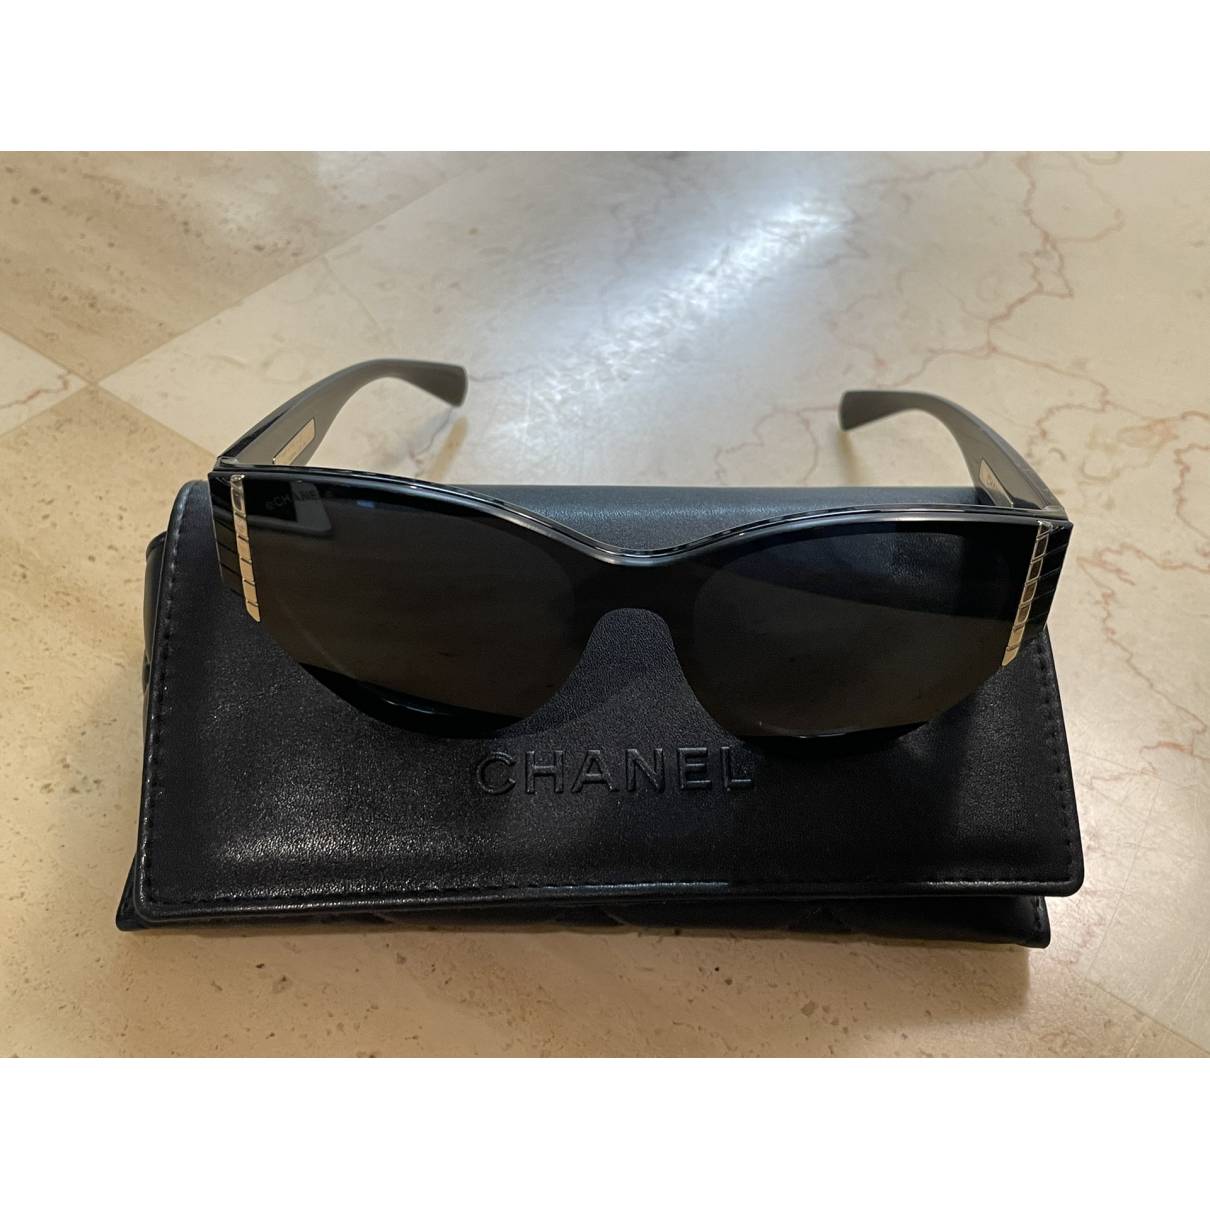 Sunglasses Chanel Black in Plastic - 36032657